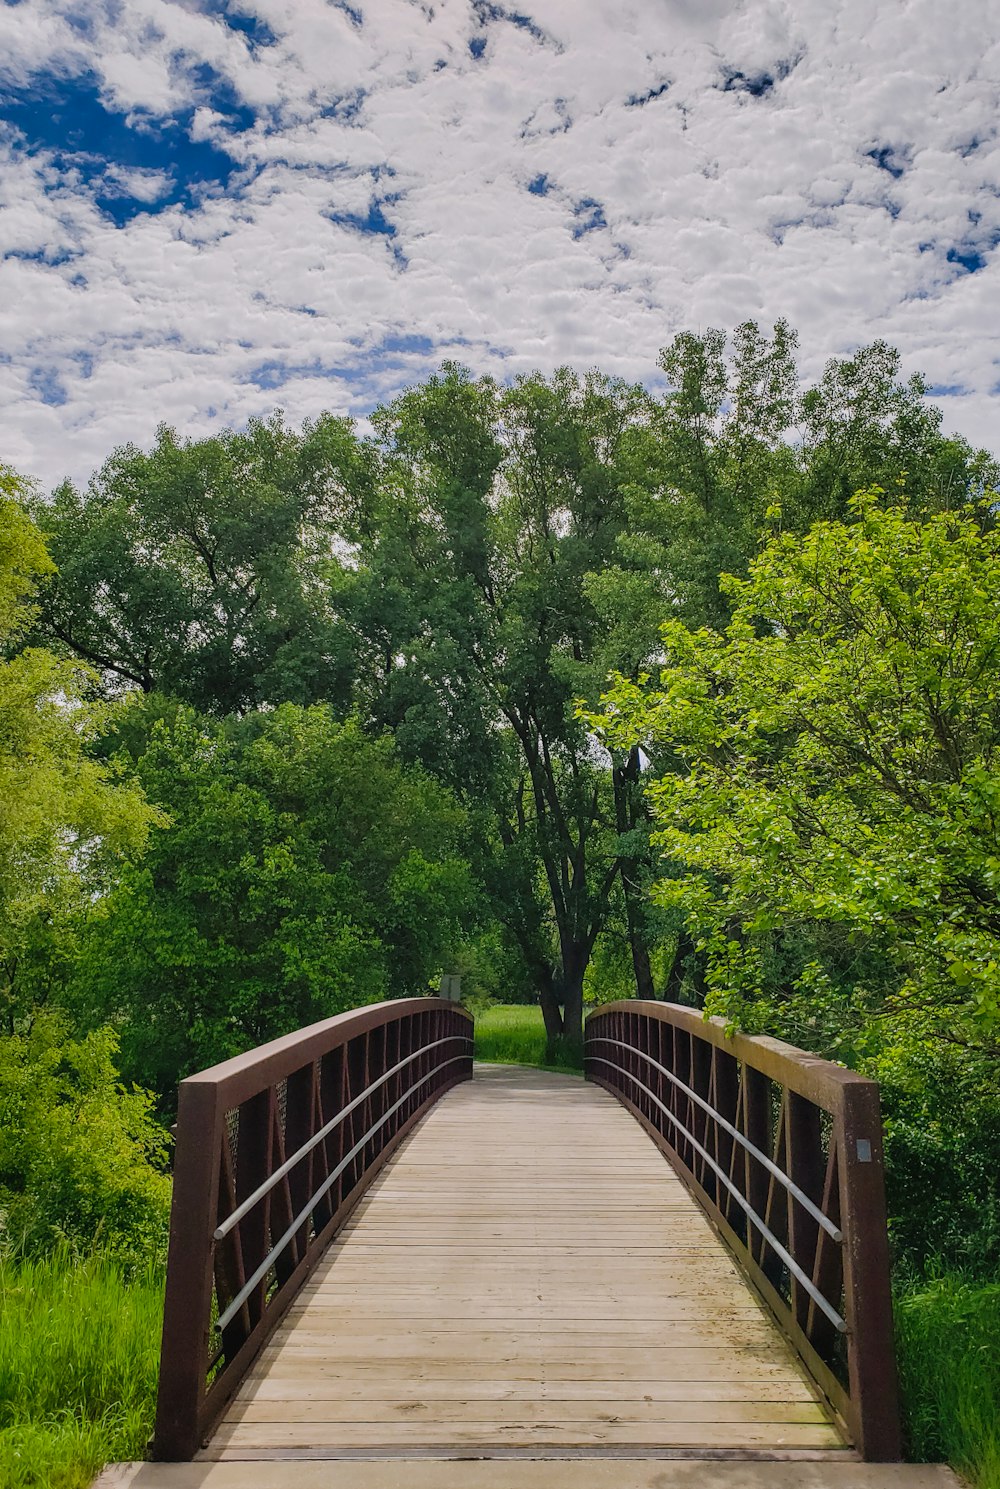 Ponte di legno marrone sopra alberi verdi sotto cielo blu e nuvole bianche durante il giorno